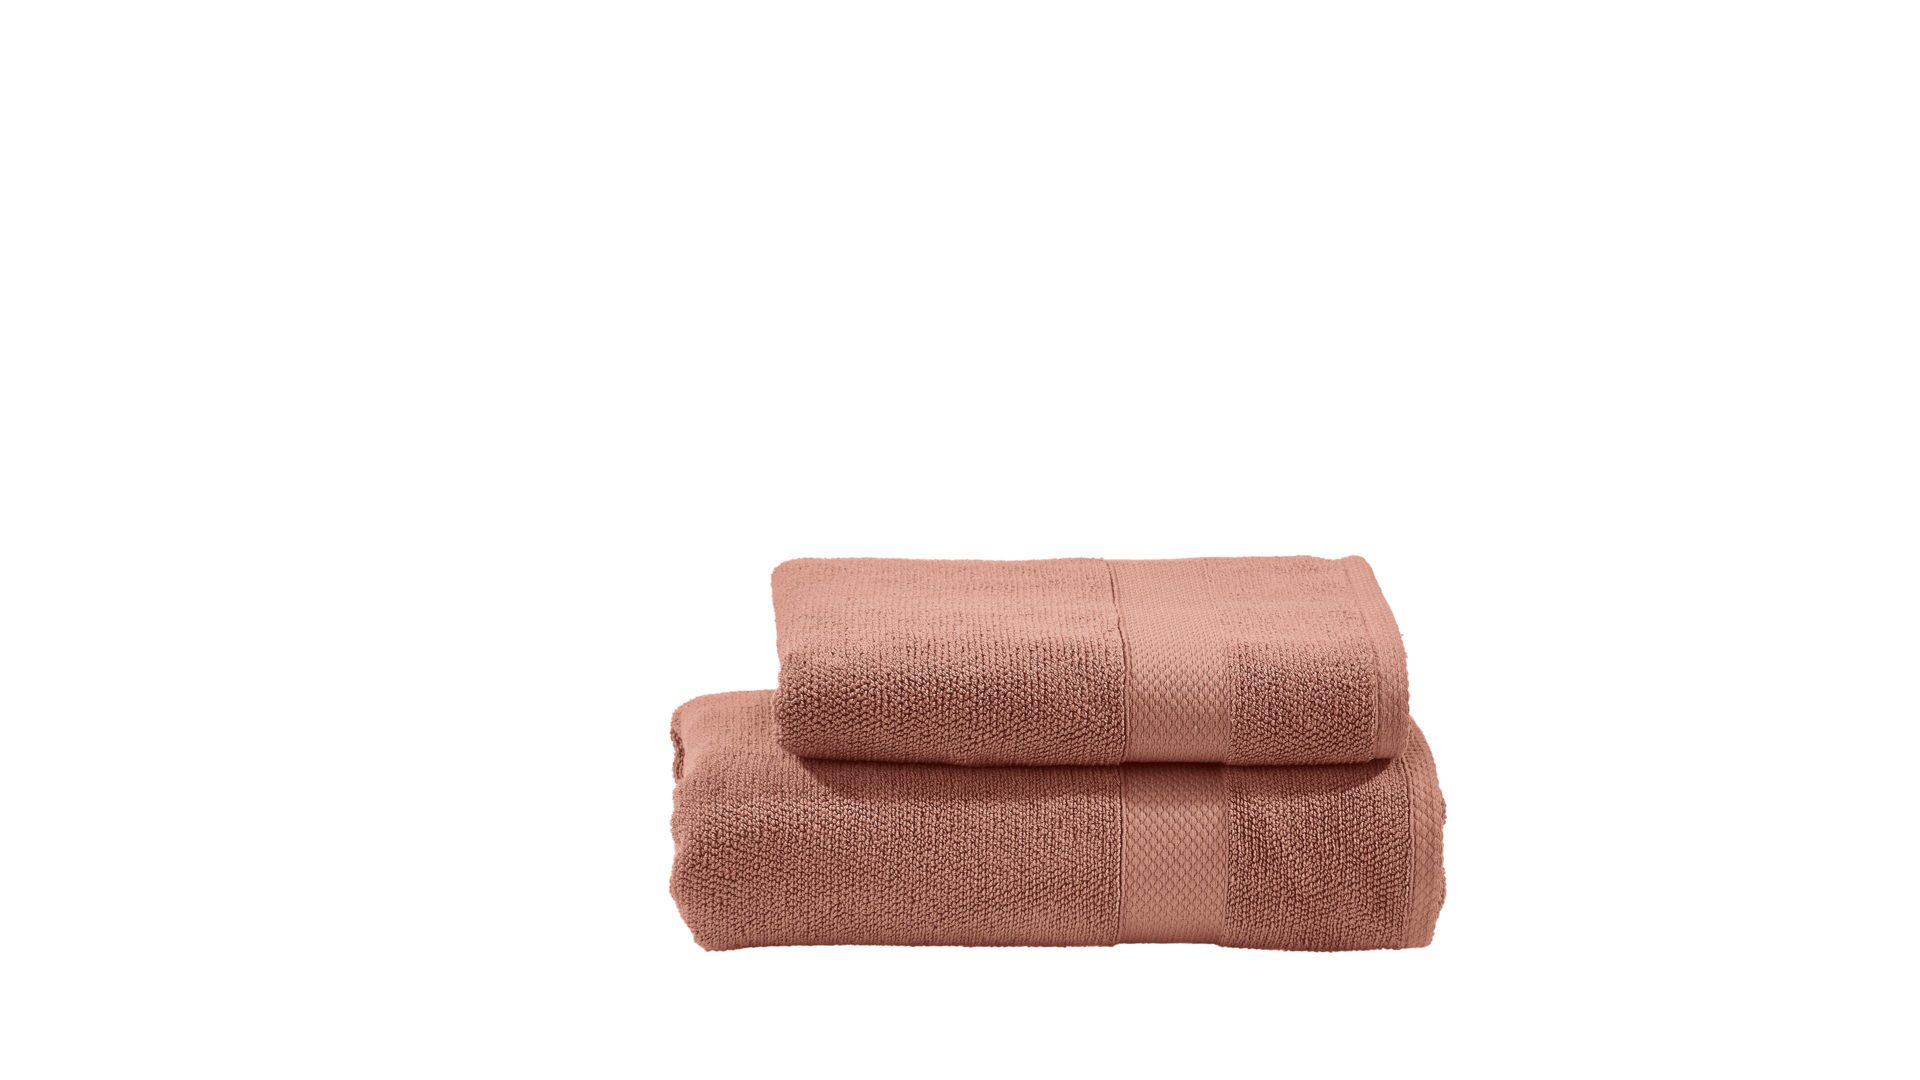 Handtuch-Set Done by karabel home company aus Stoff in Rot done Handtuch-Set Deluxe - luxuriöse Heimtextilien wüstensandfarbene Baumwolle – zweiteilig